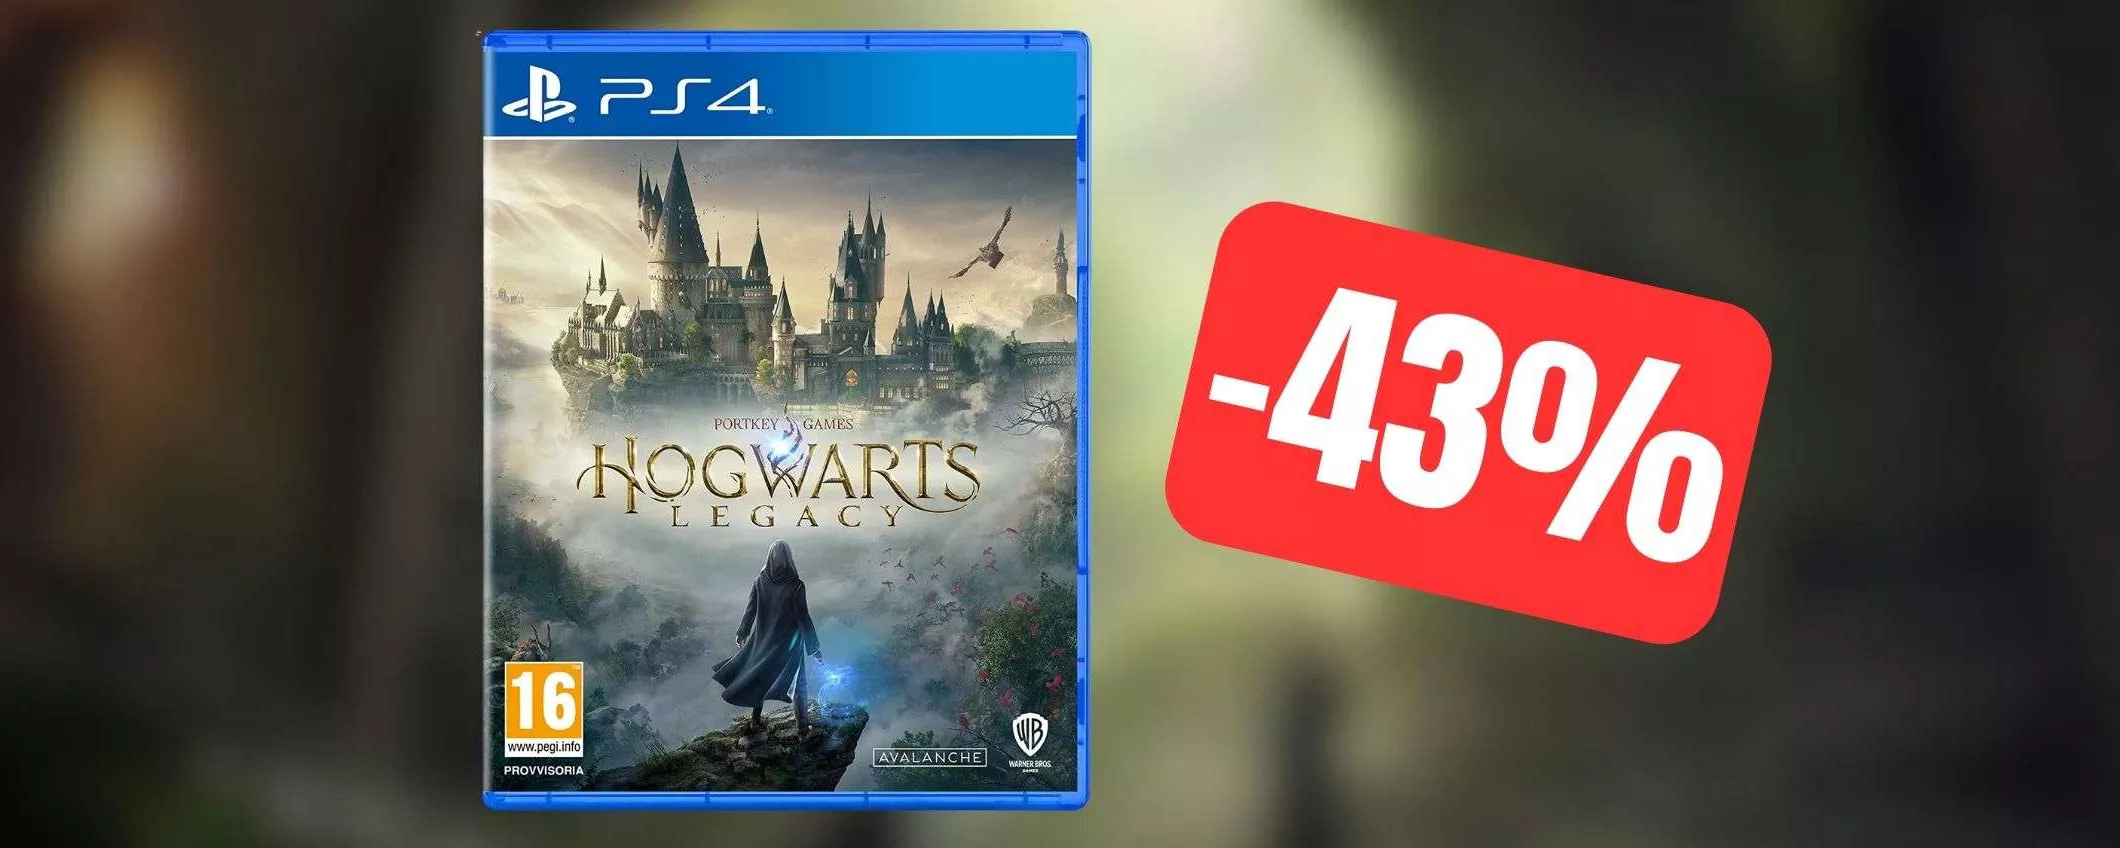 Hogwarts Legacy: il prezzo CROLLA su Amazon con questa offerta a tempo (-43%)